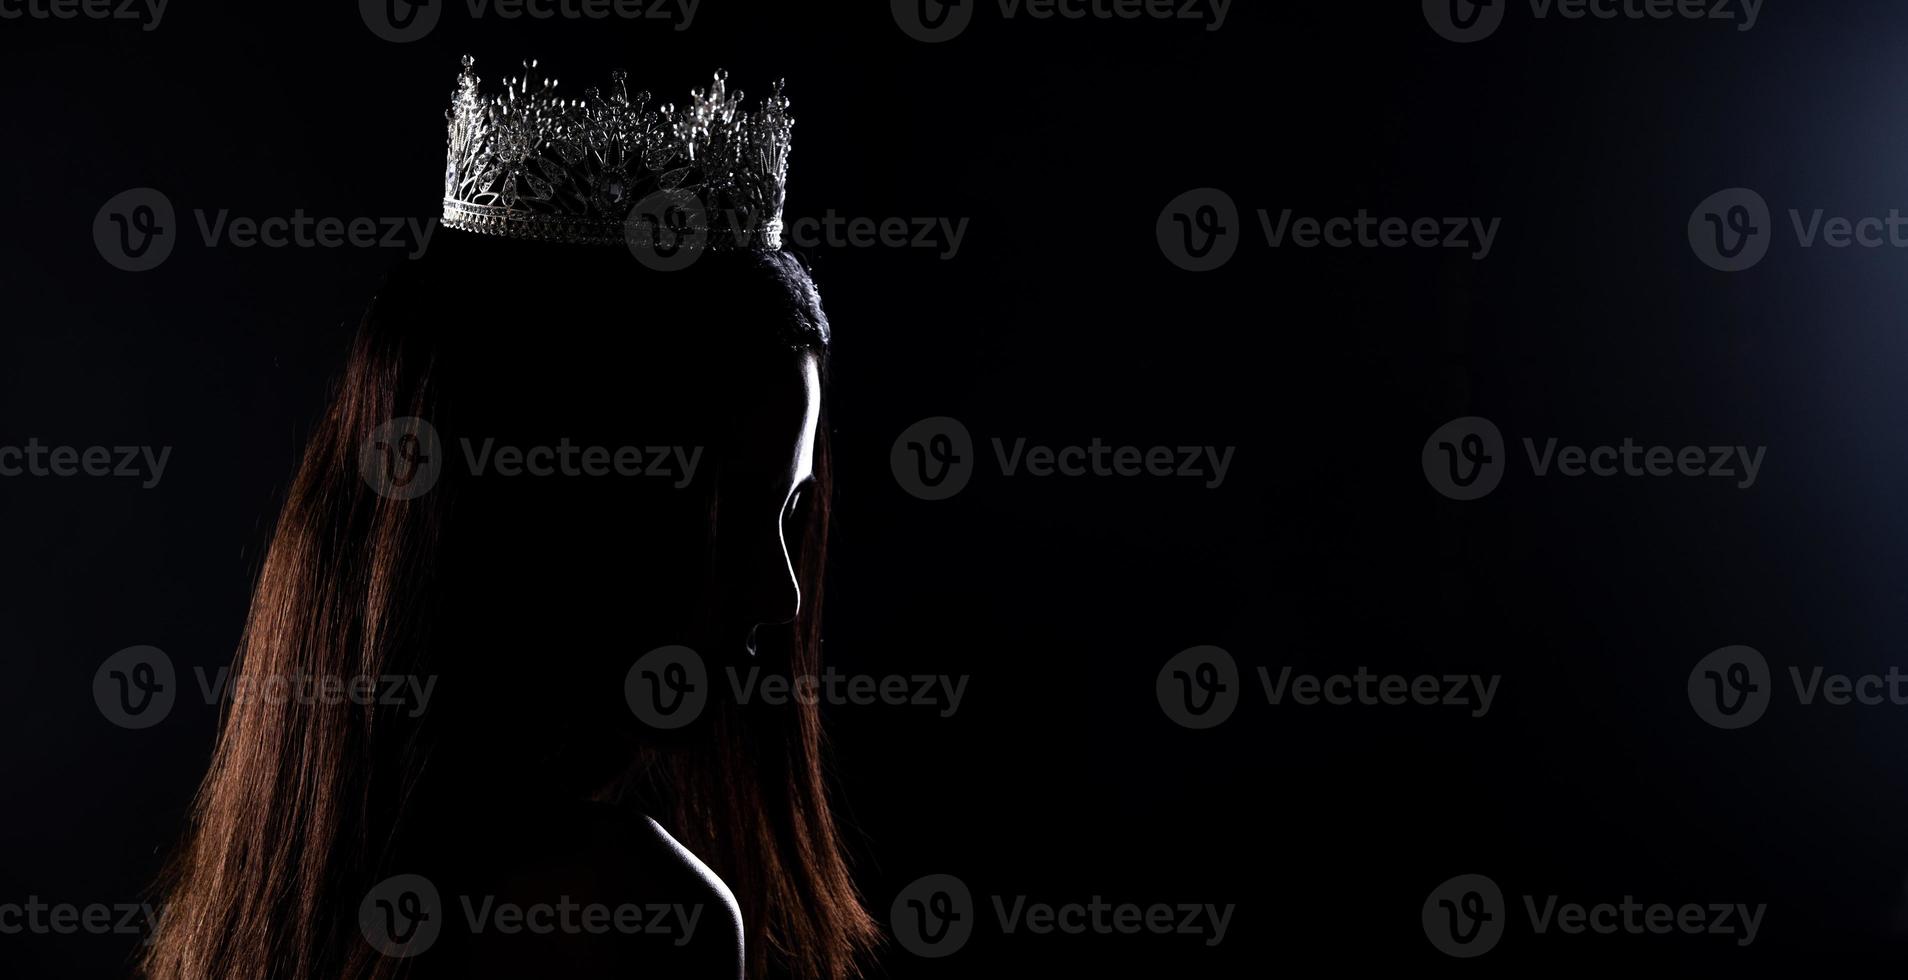 porträtt av Fröken festtåg skönhet tävling i paljett kväll boll klänning lång klänning med gnistra ljus diamant krona, silhuett låg nyckel exponering med ridå, studio belysning mörk bakgrund dramatisk foto